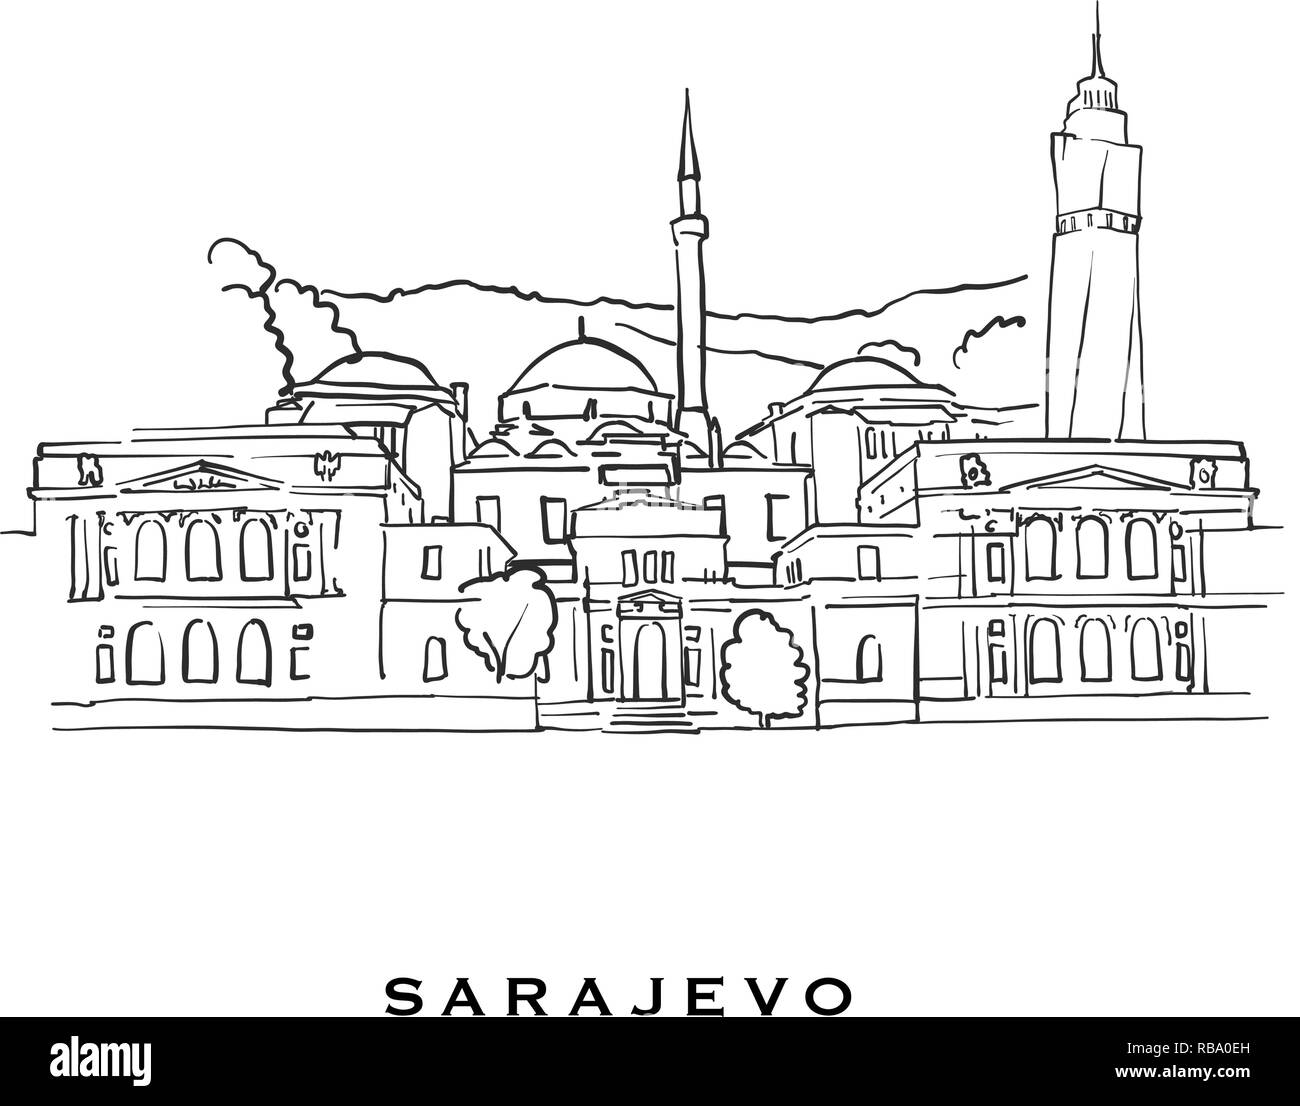 Sarajevo Bosnien und Herzegowina berühmte Architektur. Vektor Skizze auf weißem Hintergrund getrennt aufgeführt. Architektur Zeichnungen aller Europäischen capit Stock Vektor